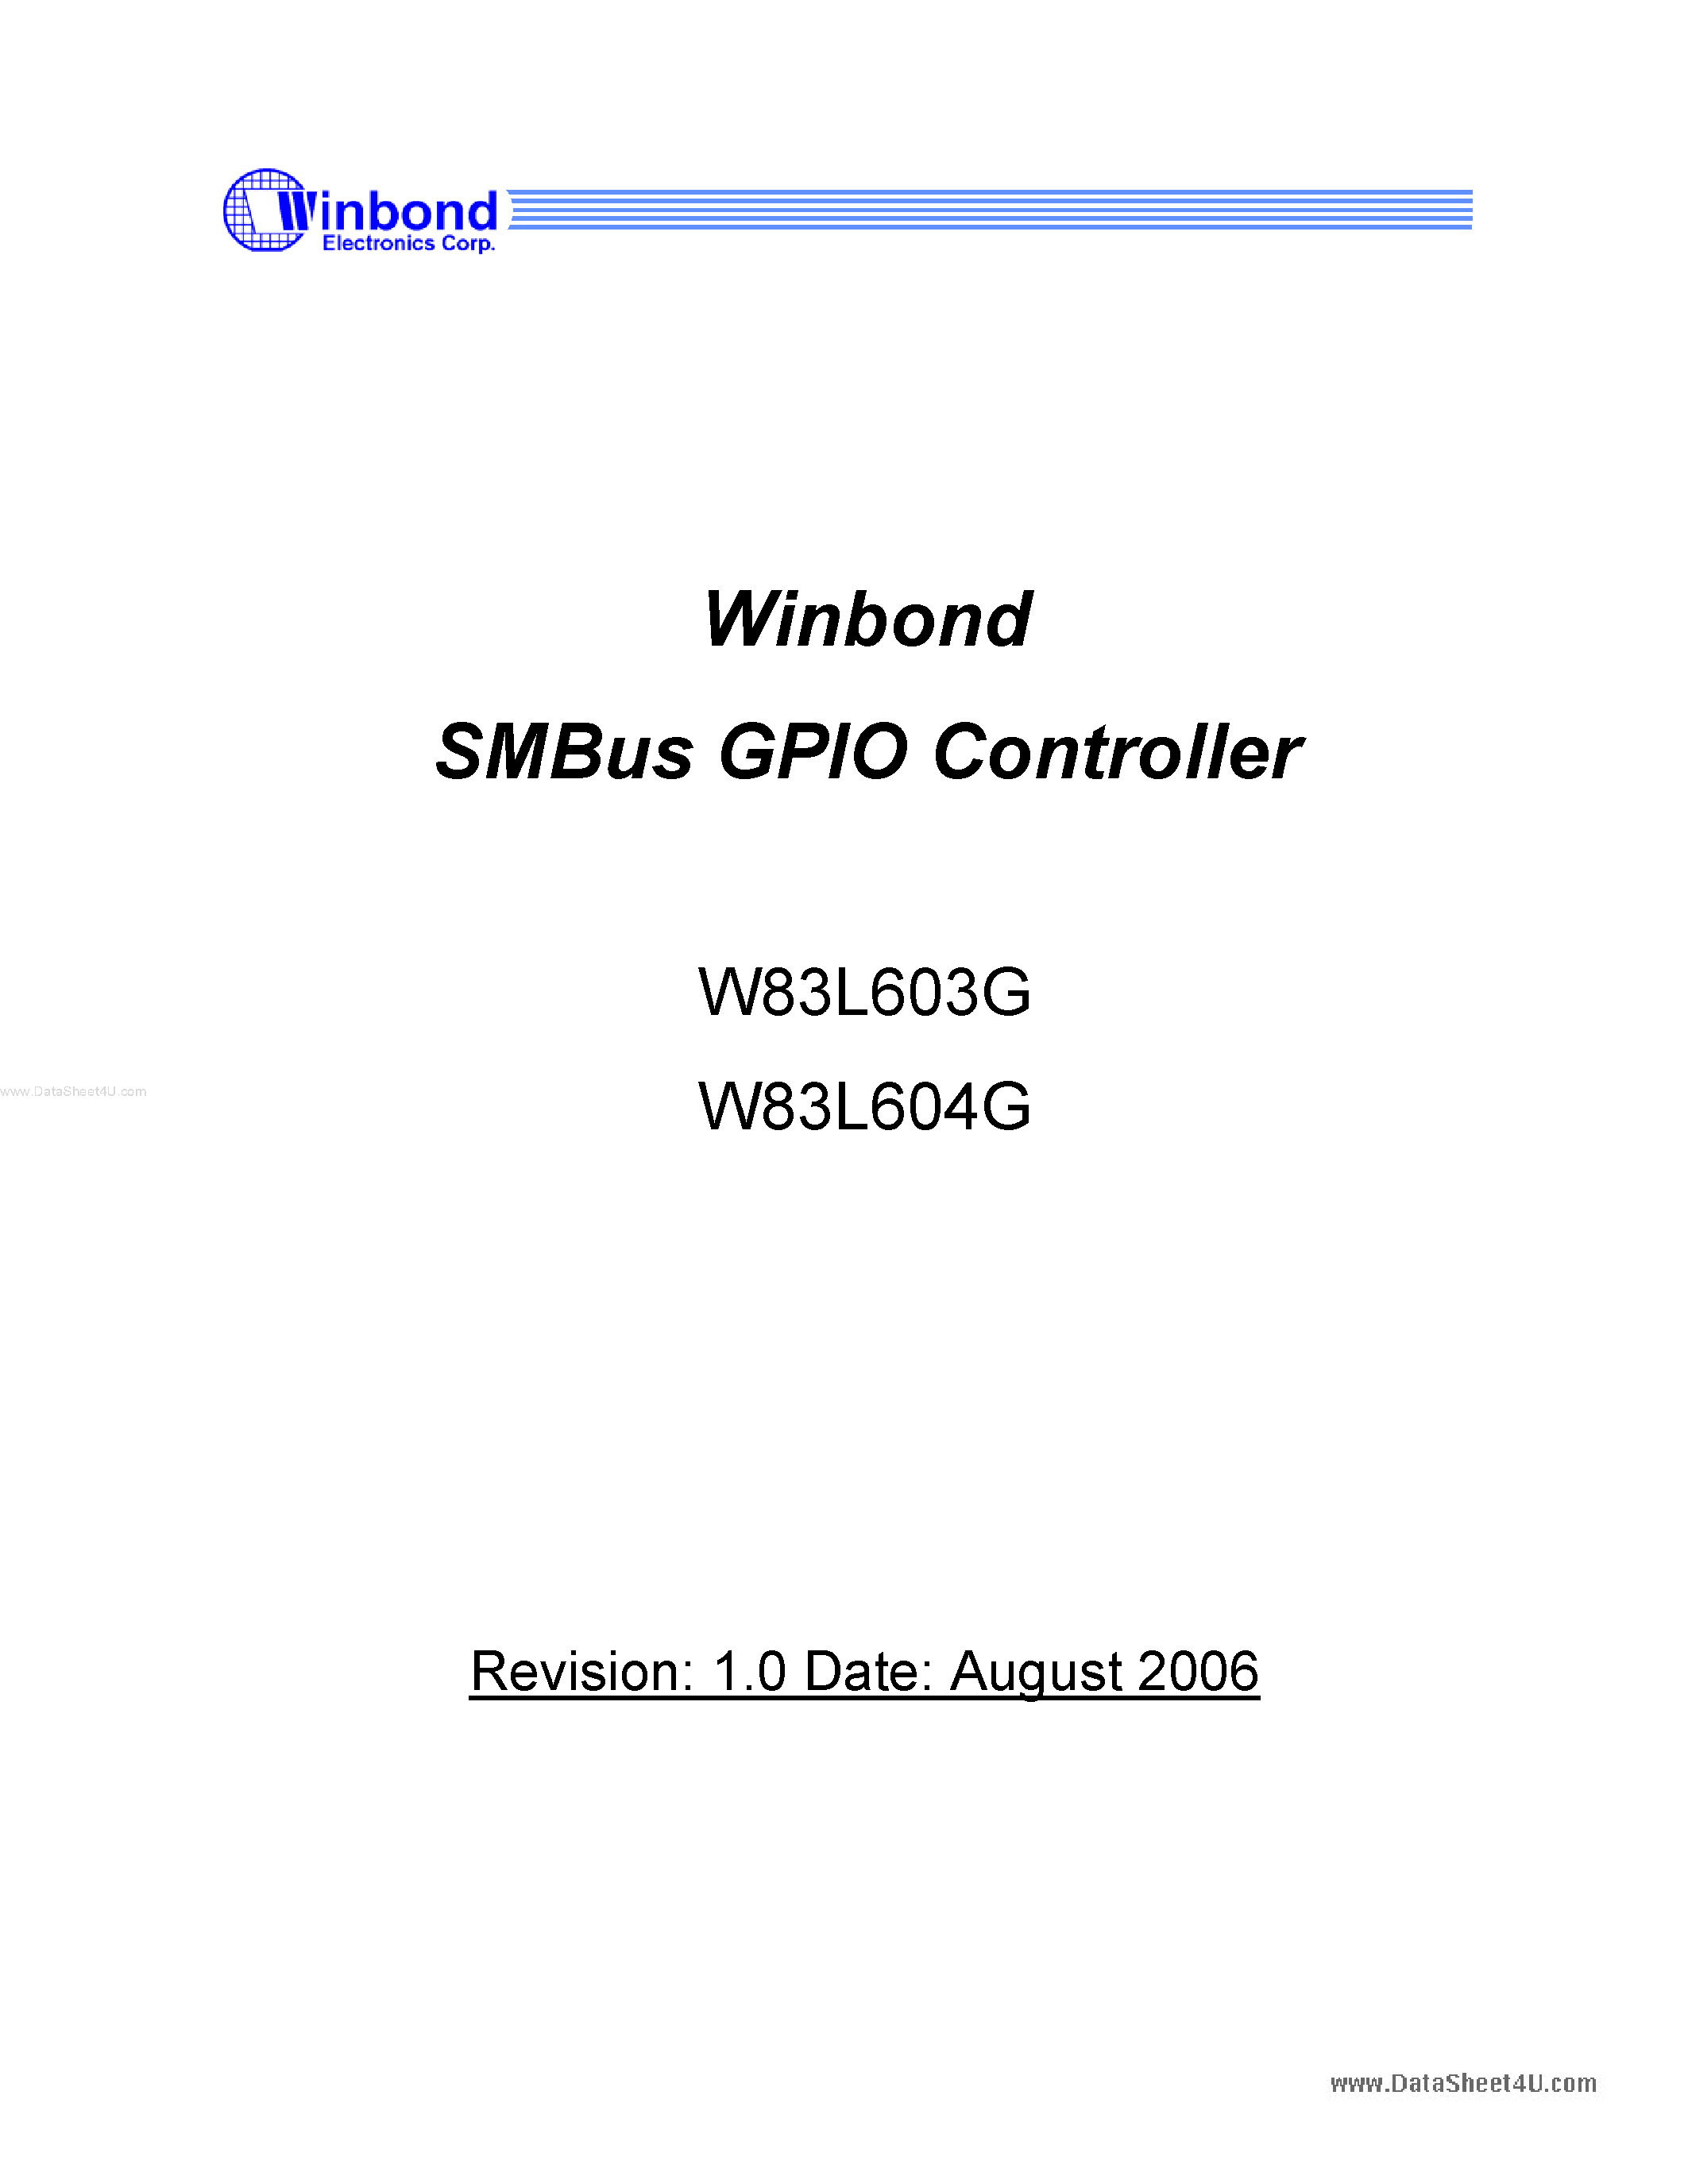 Даташит W83L603G - (W83L603G / W83L604G) SMBus GPIO Controller страница 1